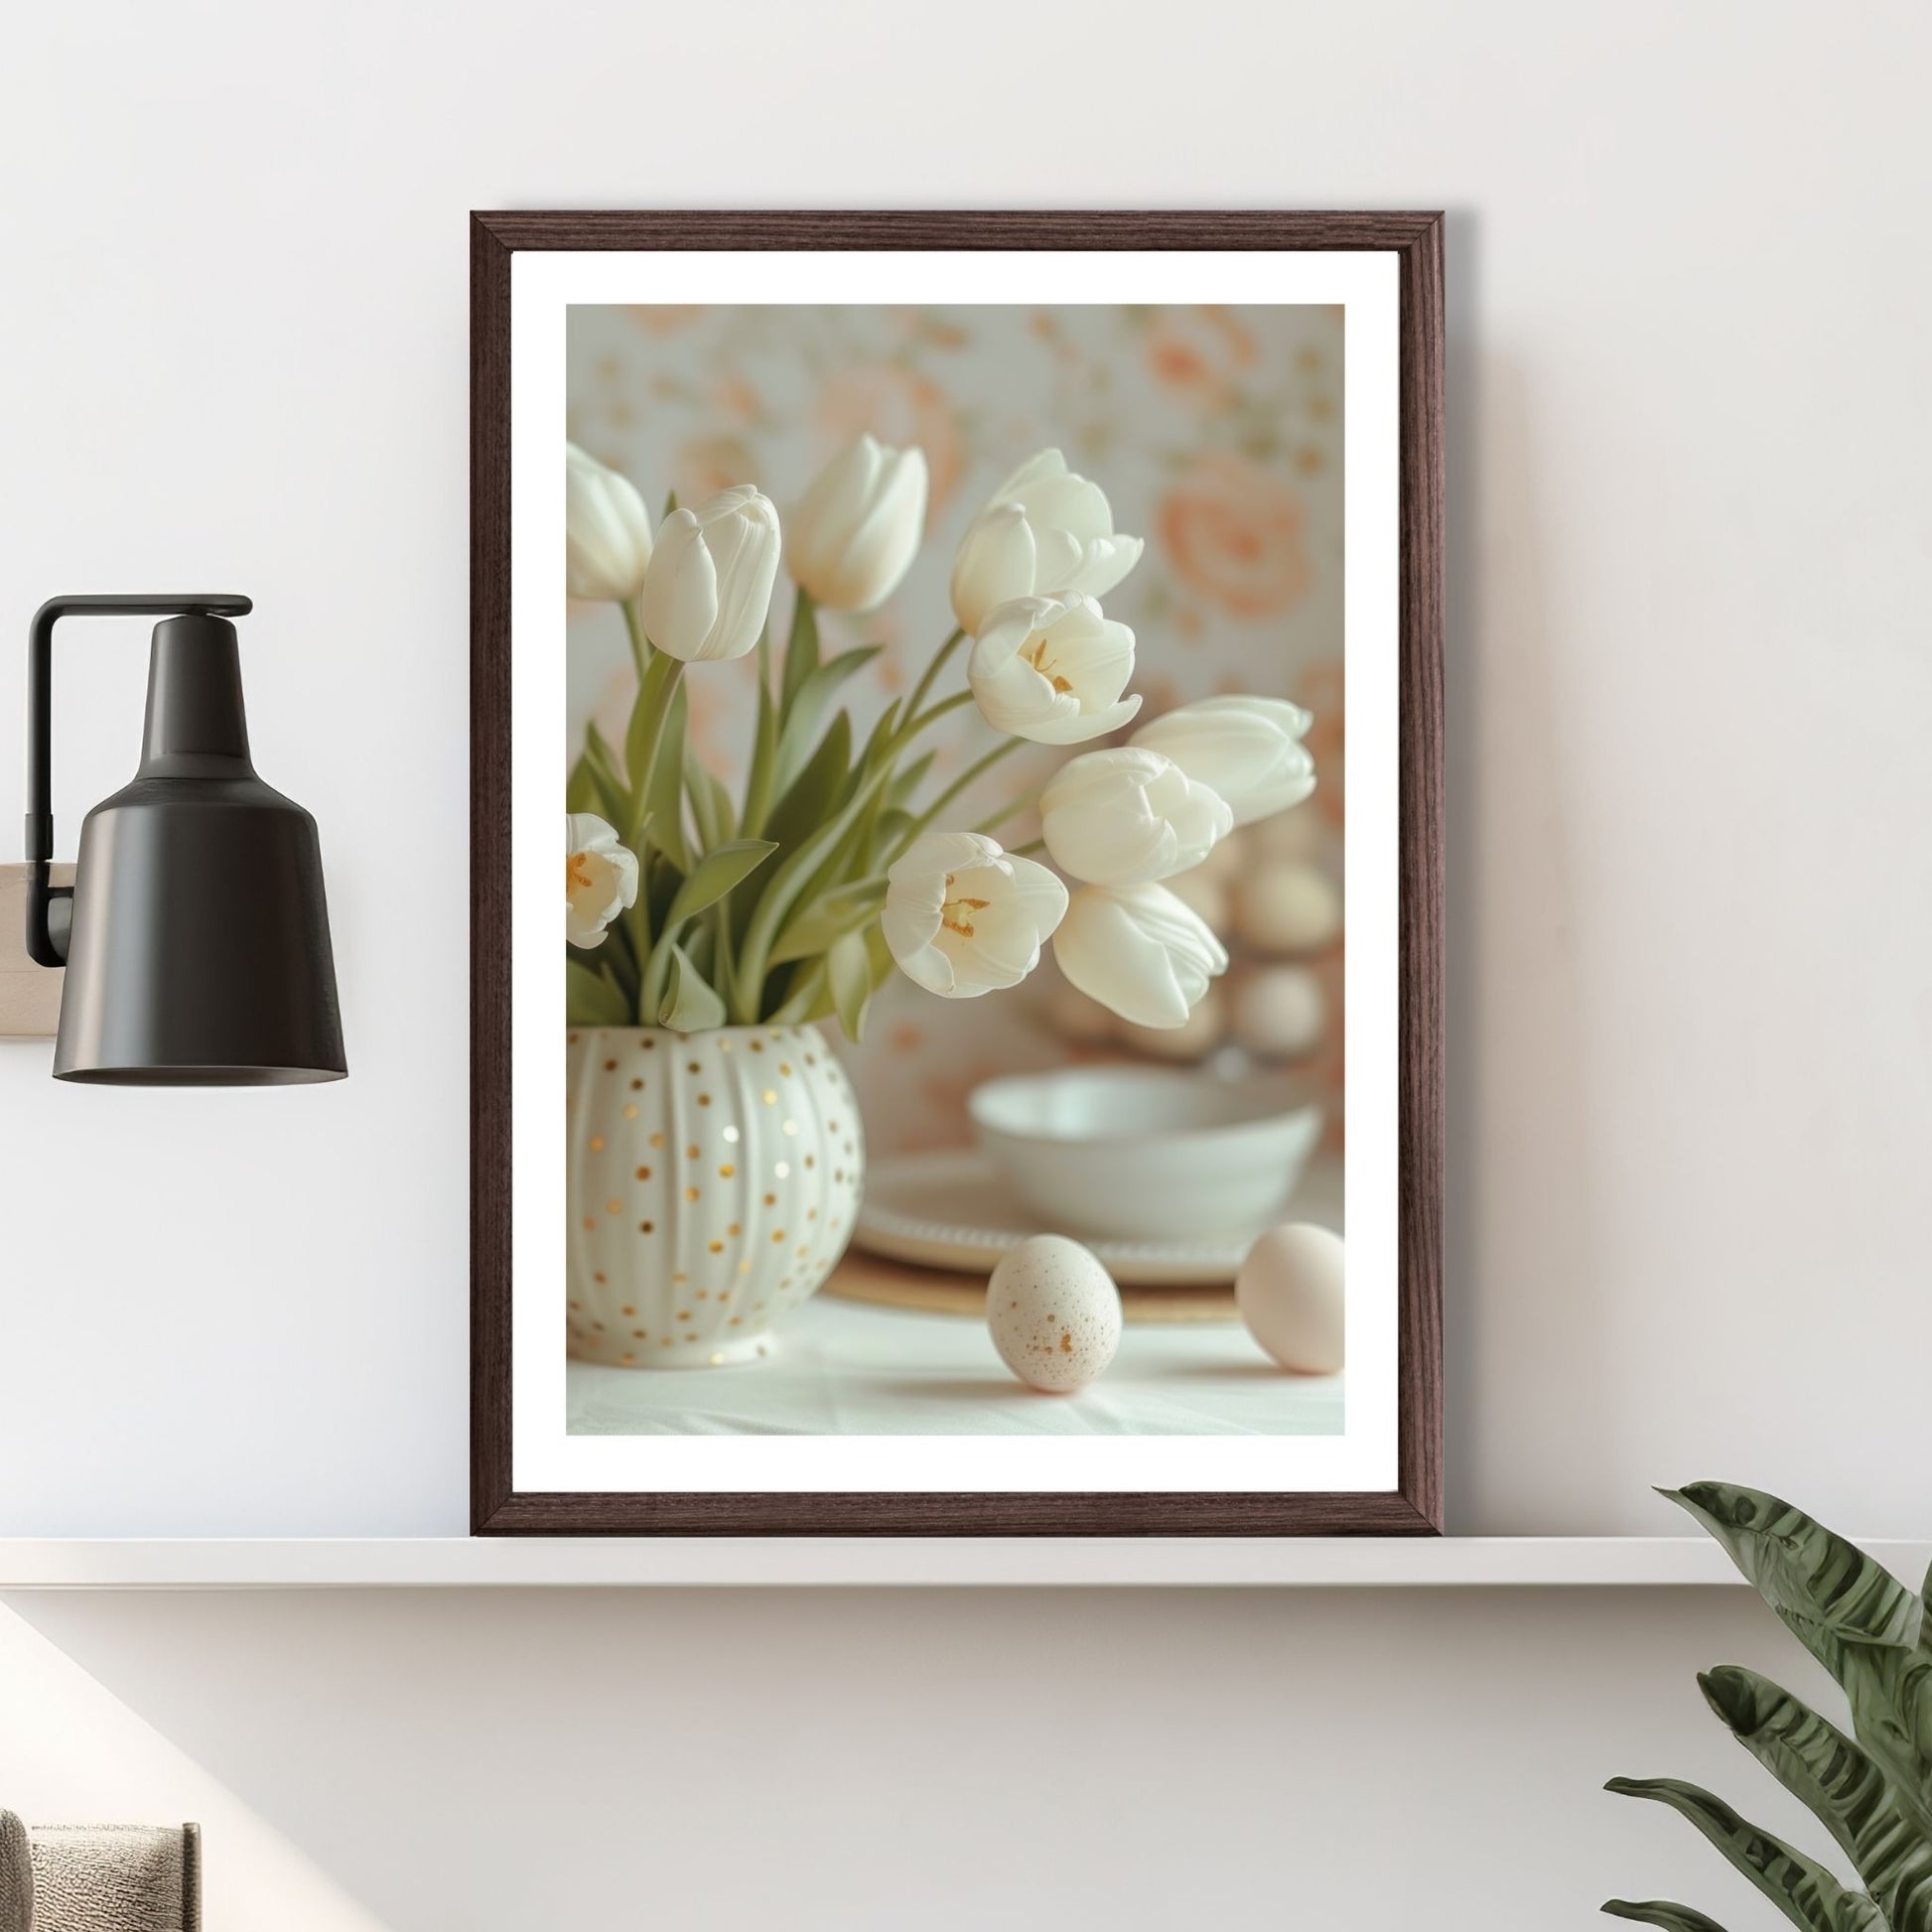 Grafisk illustrasjon av en rund, hvit vase med gullprikker, fylt med hvite tulipaner. Ved siden av vase ligger noen hvite påskeeg. Illustrasjonsbilde av plakat i brun ramme som står på en hylle.